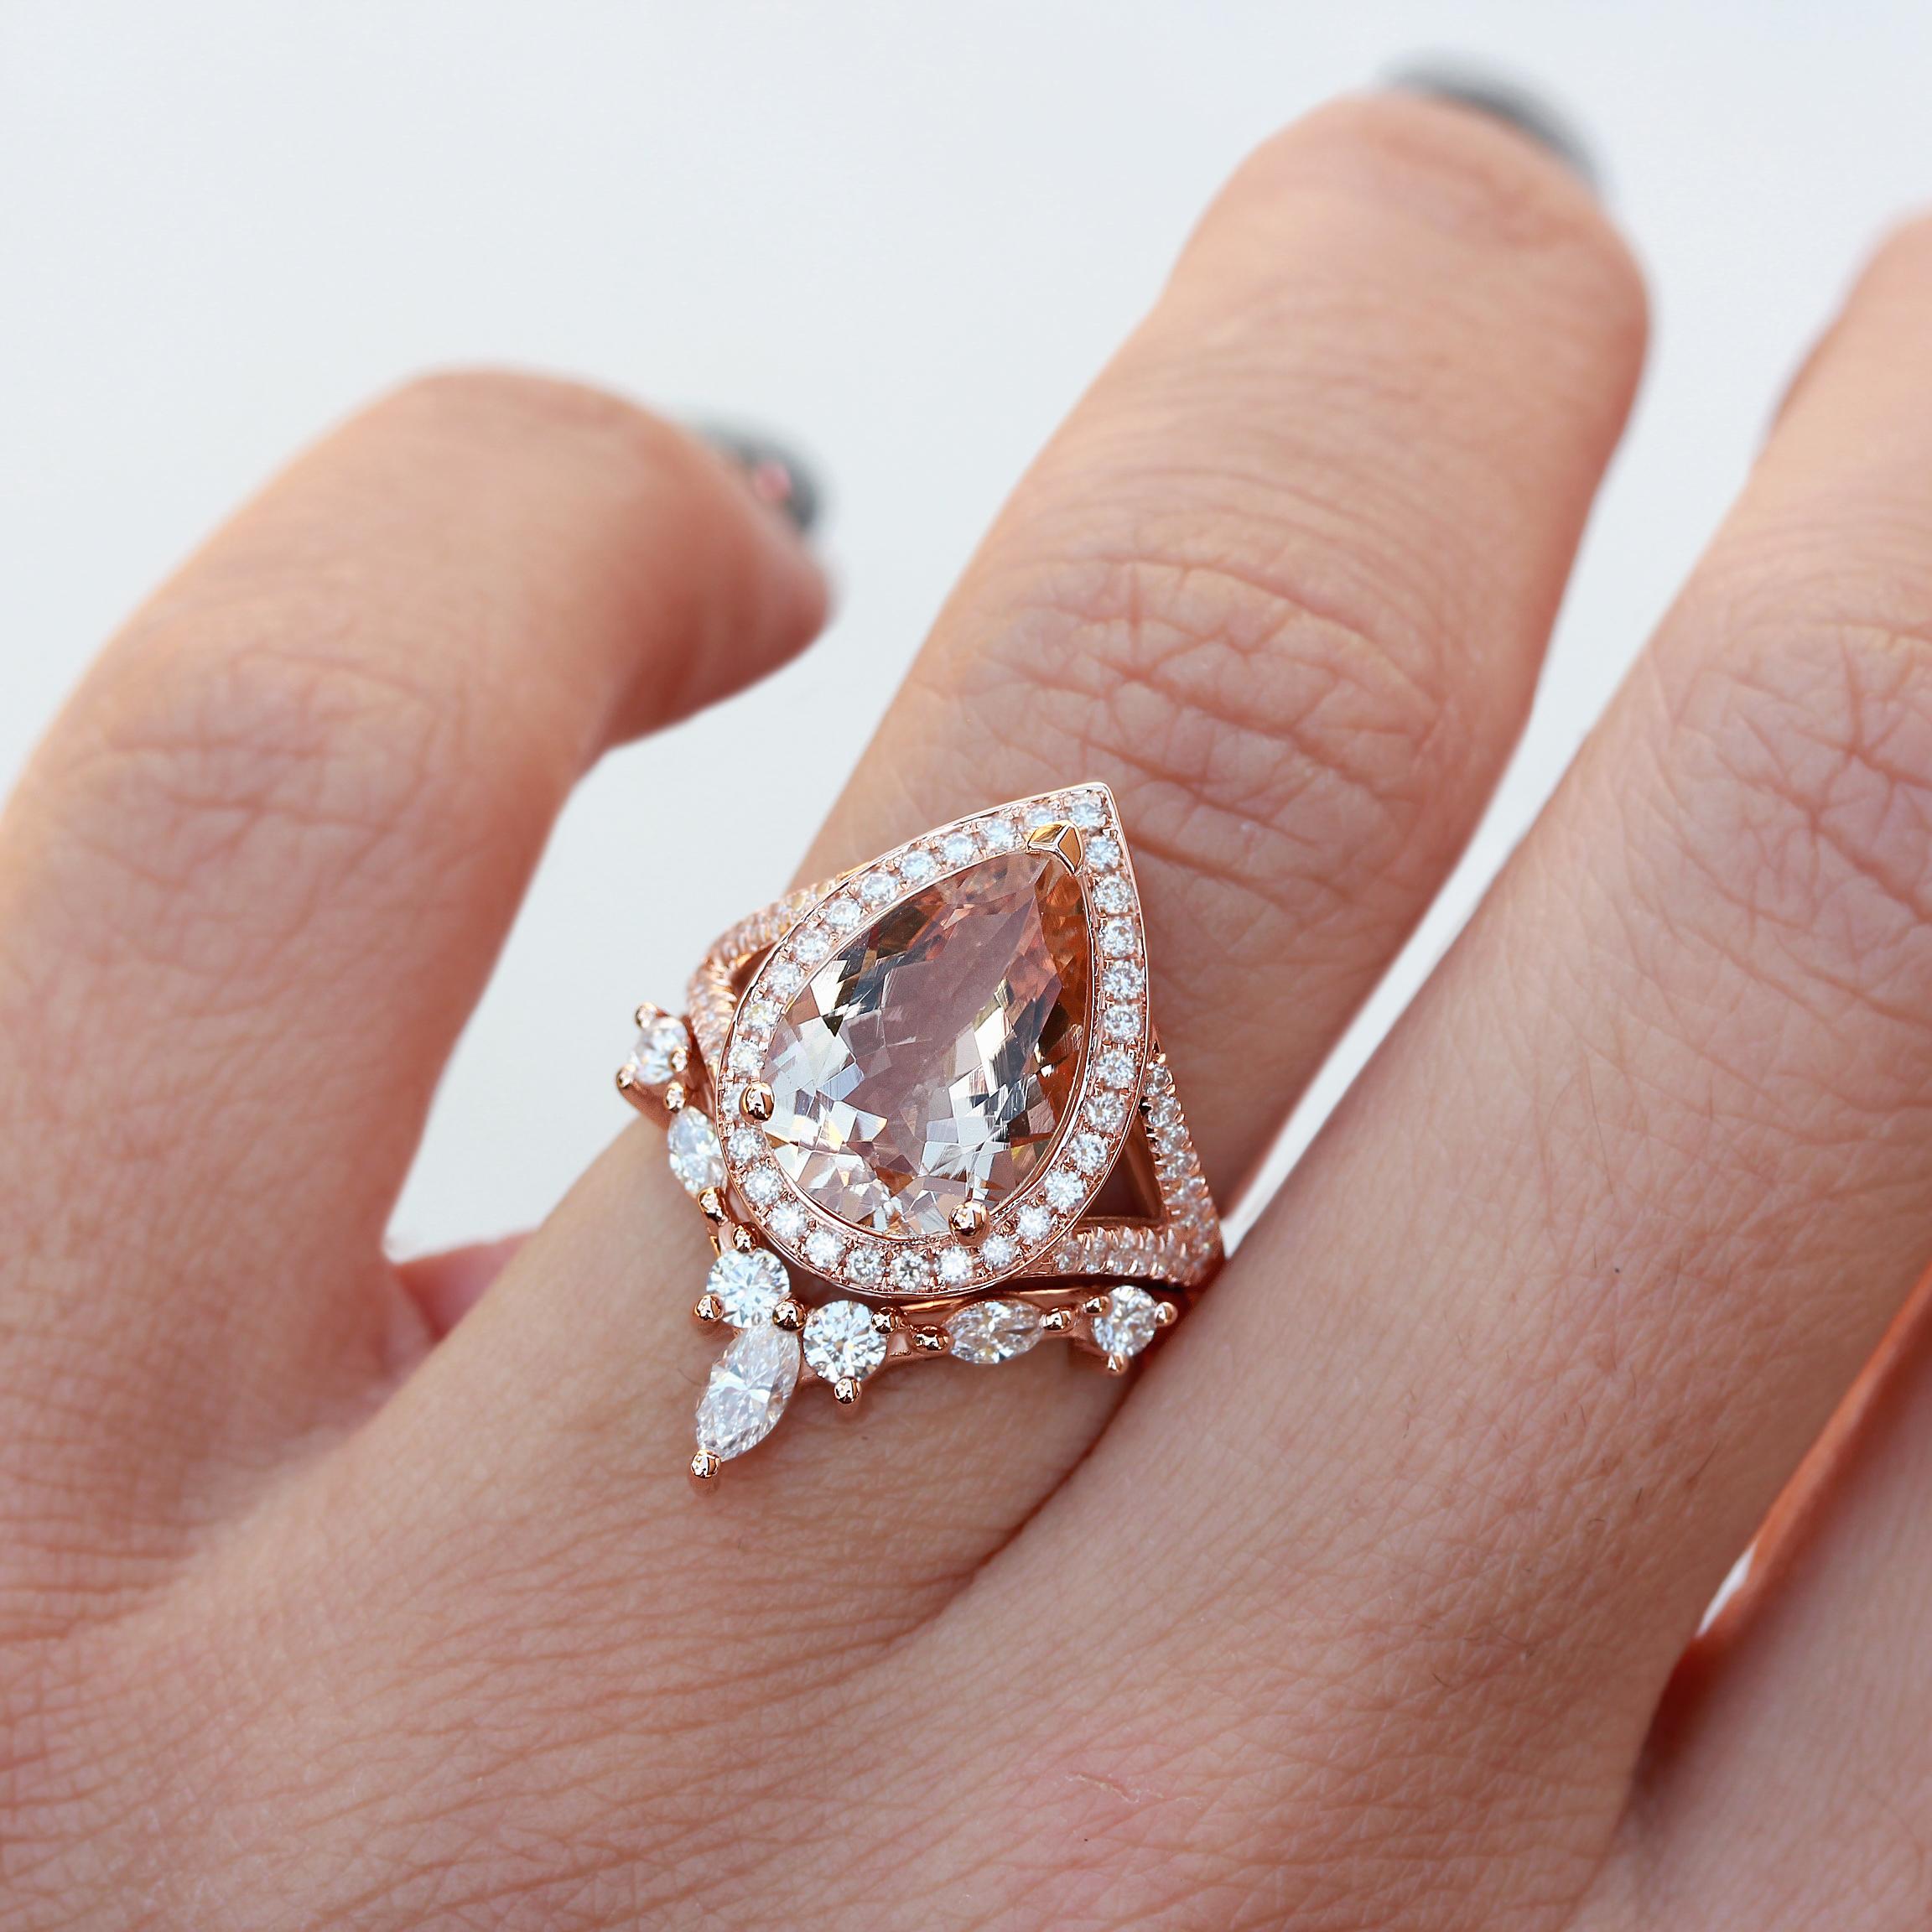 Wunderschönes birnenförmiges 3,0ct Morganit und Diamanten zwei Ringe Verlobungsset - Nia cocktail.
Perfekt als Brautring-Set, Cocktailring oder Statement-Ring.
Die Liste ist für einen Satz mit zwei Ringen.
Mit Sorgfalt handgefertigt. 
Ein